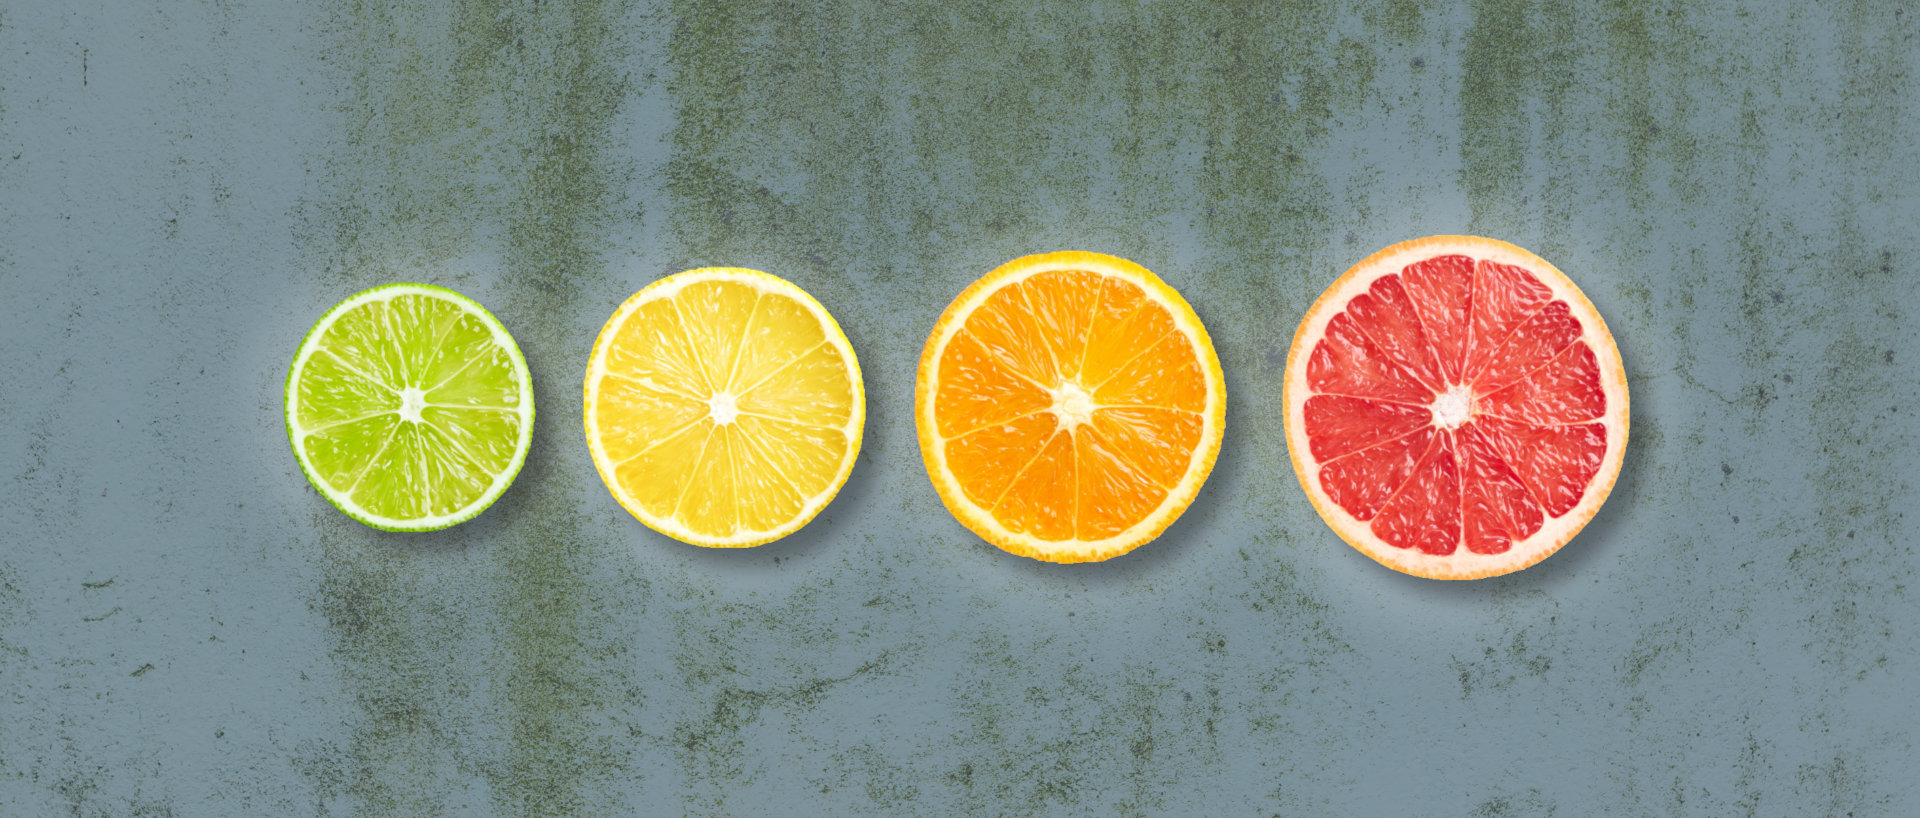 Økologiske citrusfrugter til lemonade på række